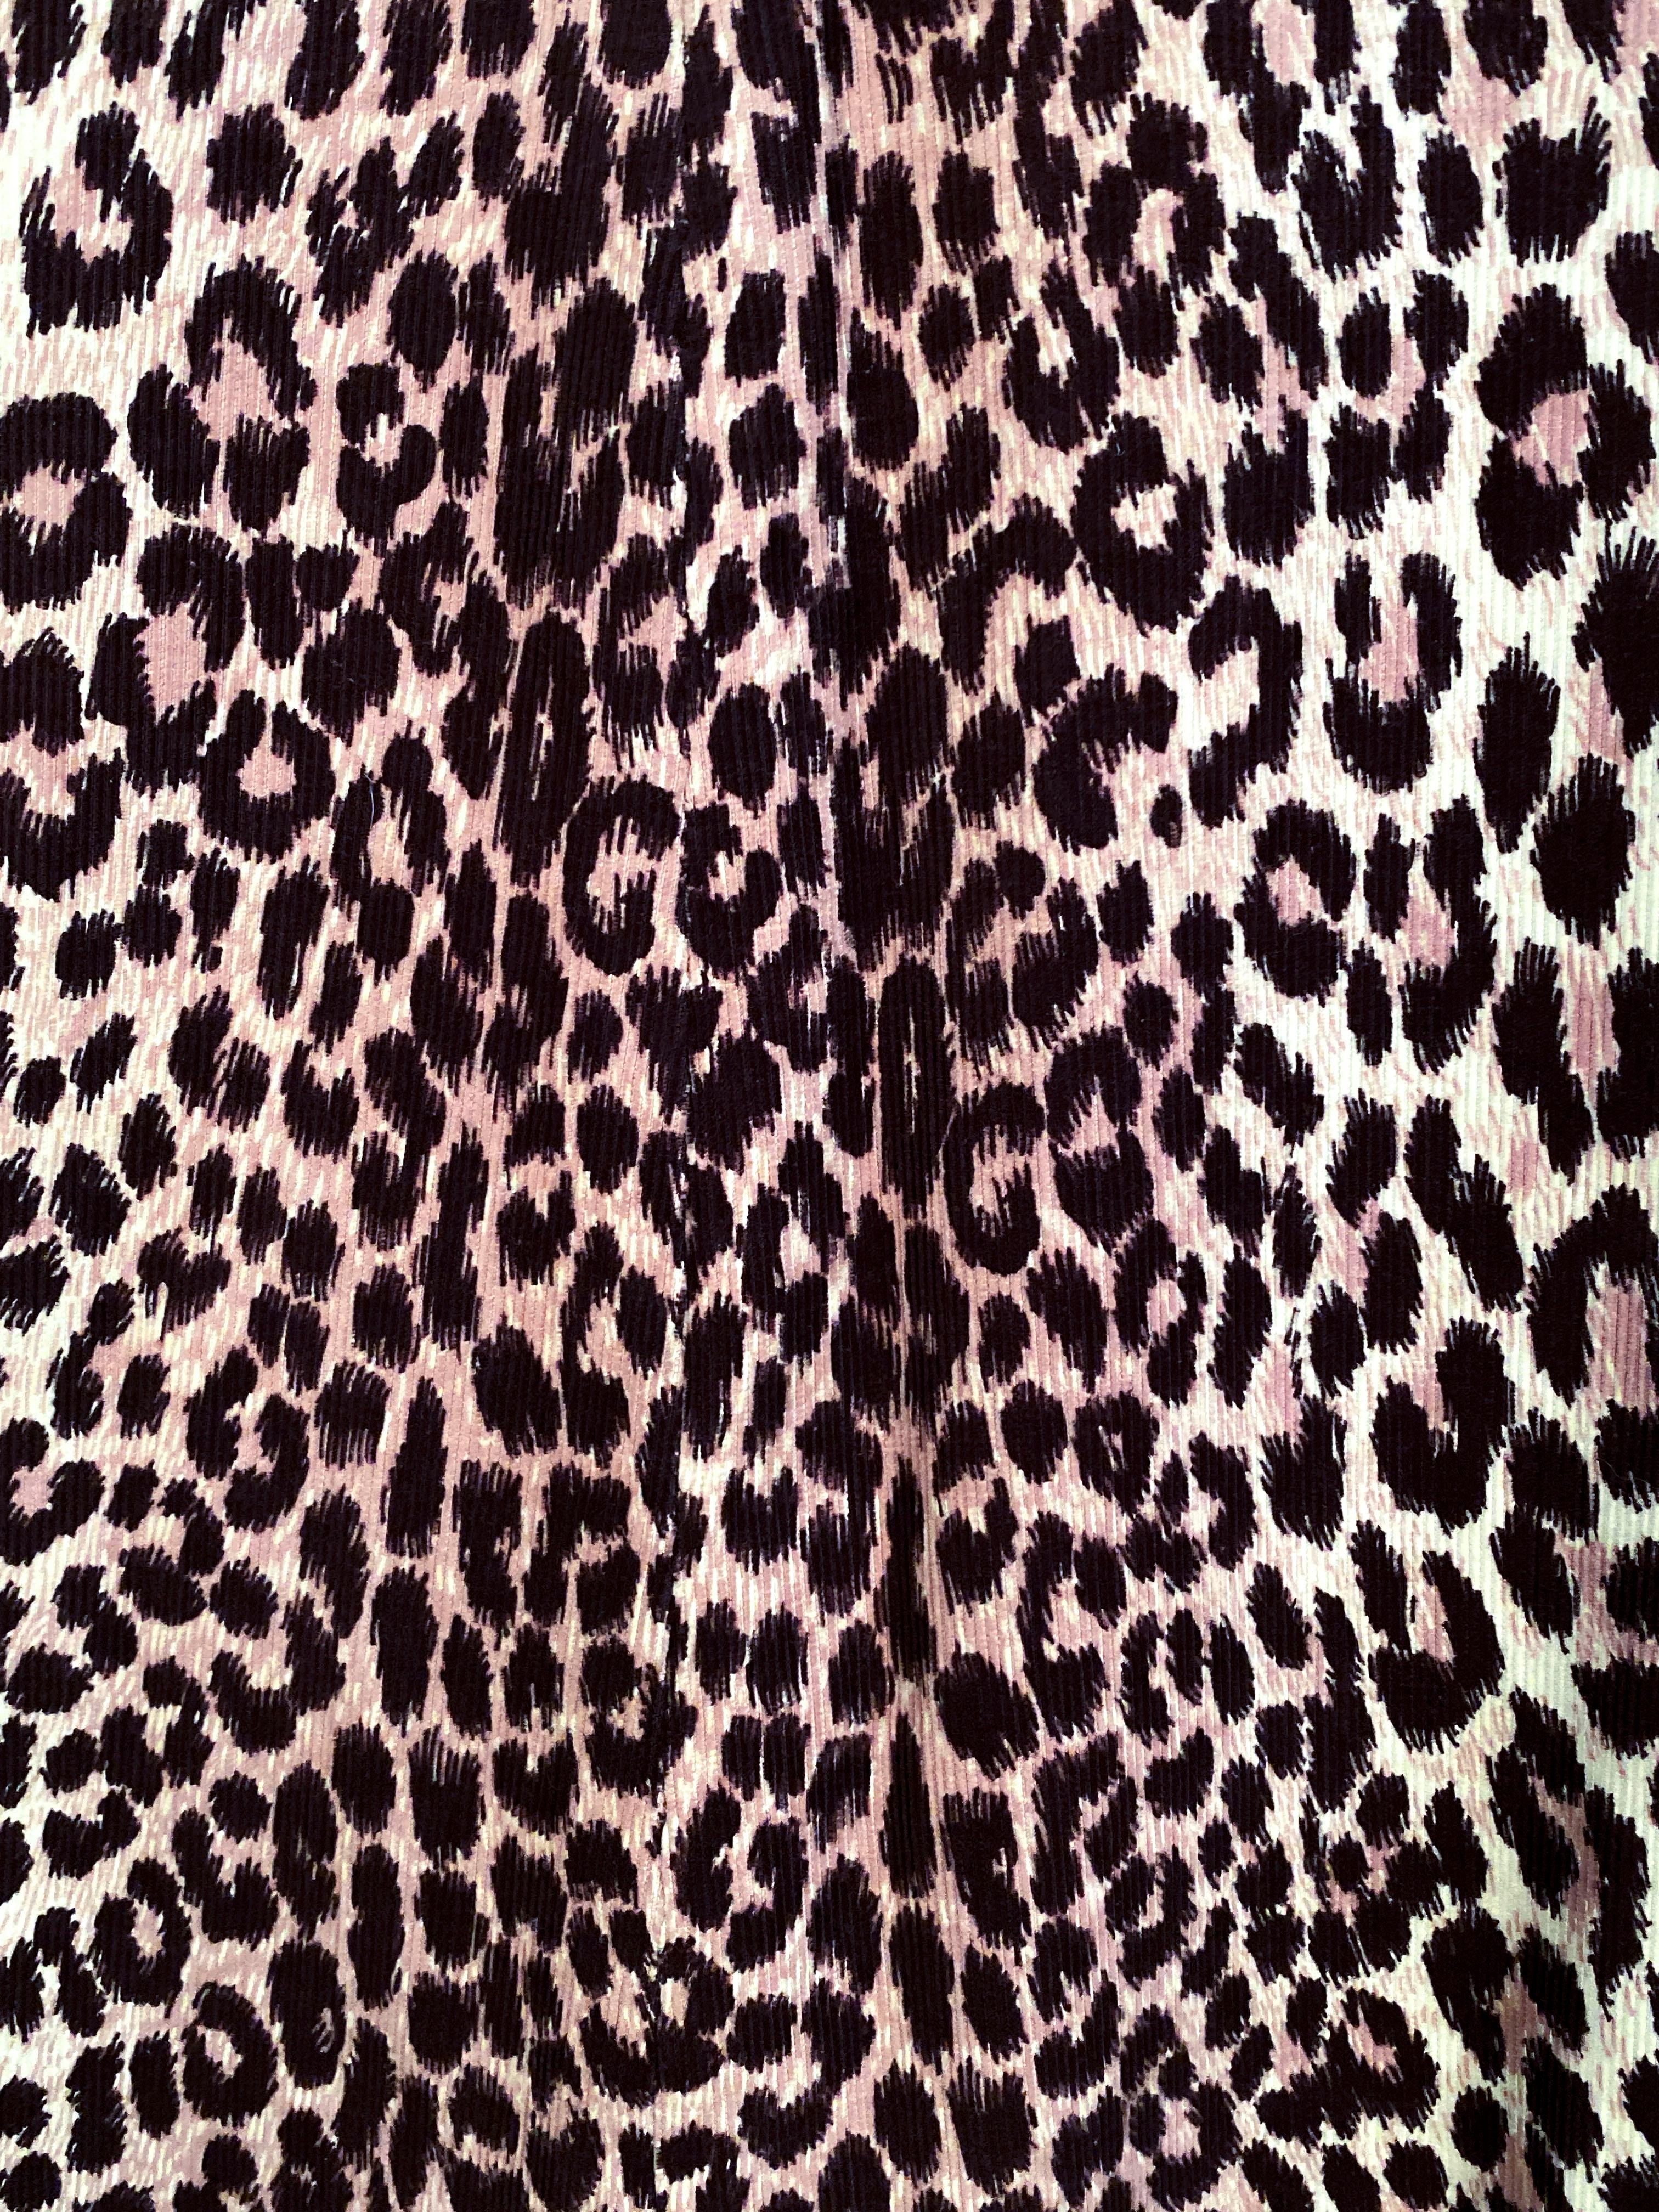 Women's 1940s Cheetah Printed Coat